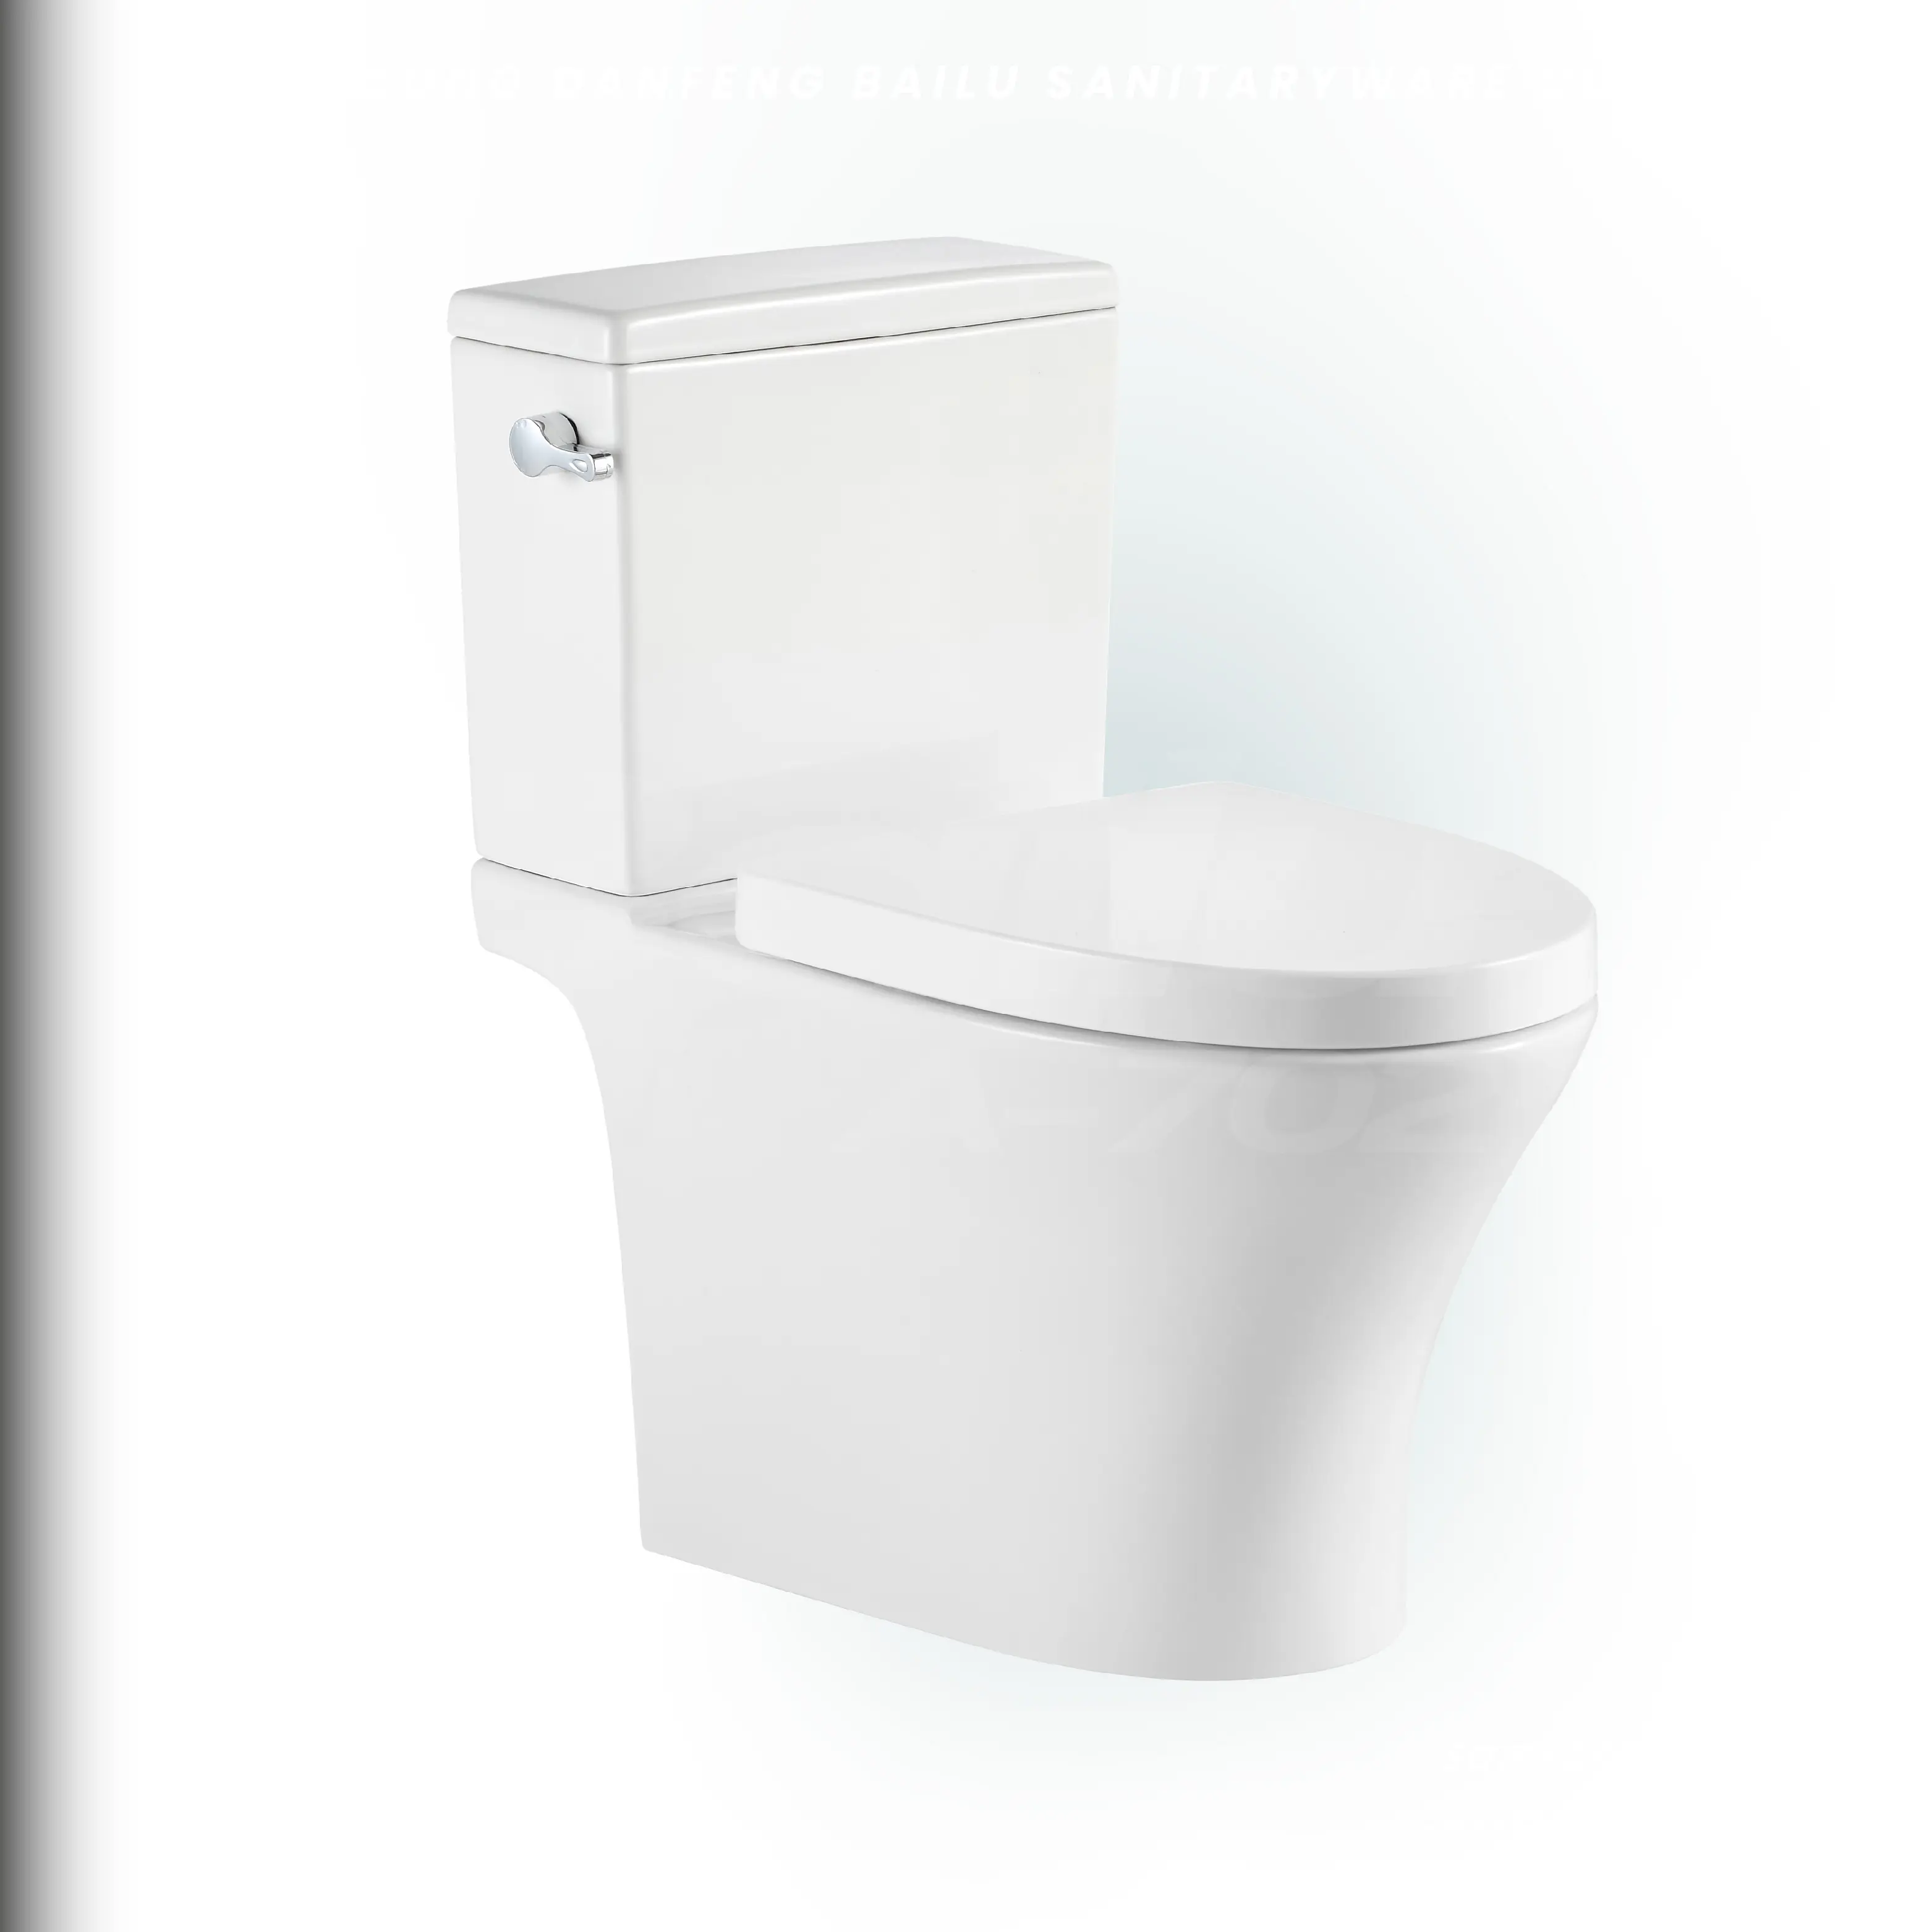 BAILU A-702B Boden montiert Dual-Flush Keramik Siphonic zweiteilige Toilette für Badezimmer WC WC Kommode Preis billig